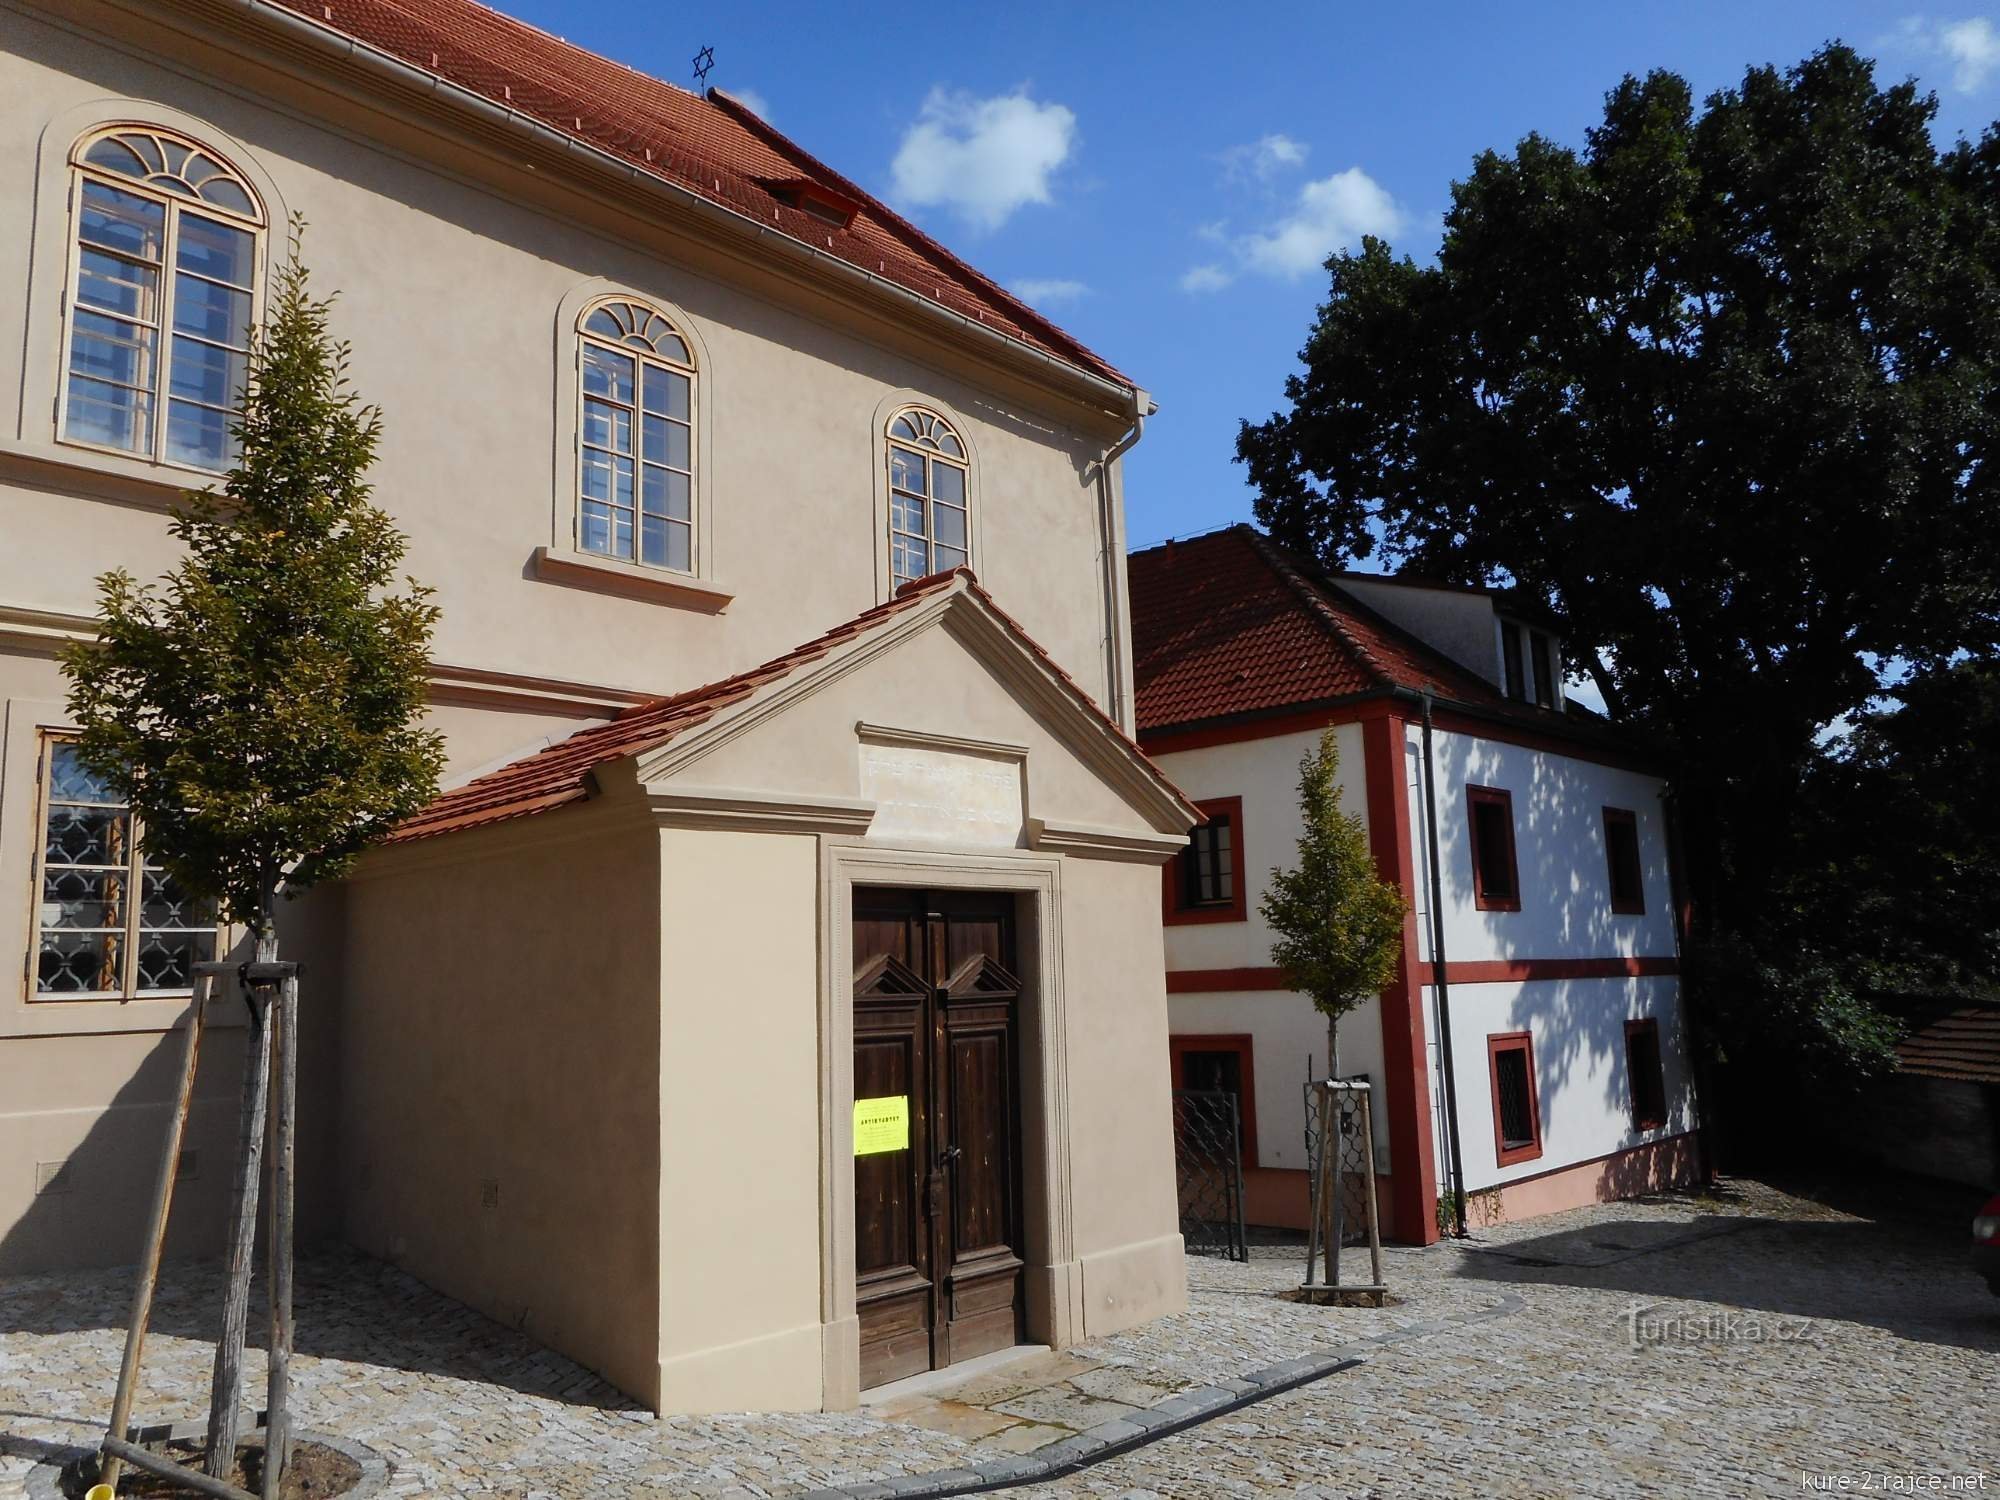 Σήμερα, η συναγωγή λειτουργεί ως εβραϊκό μουσείο